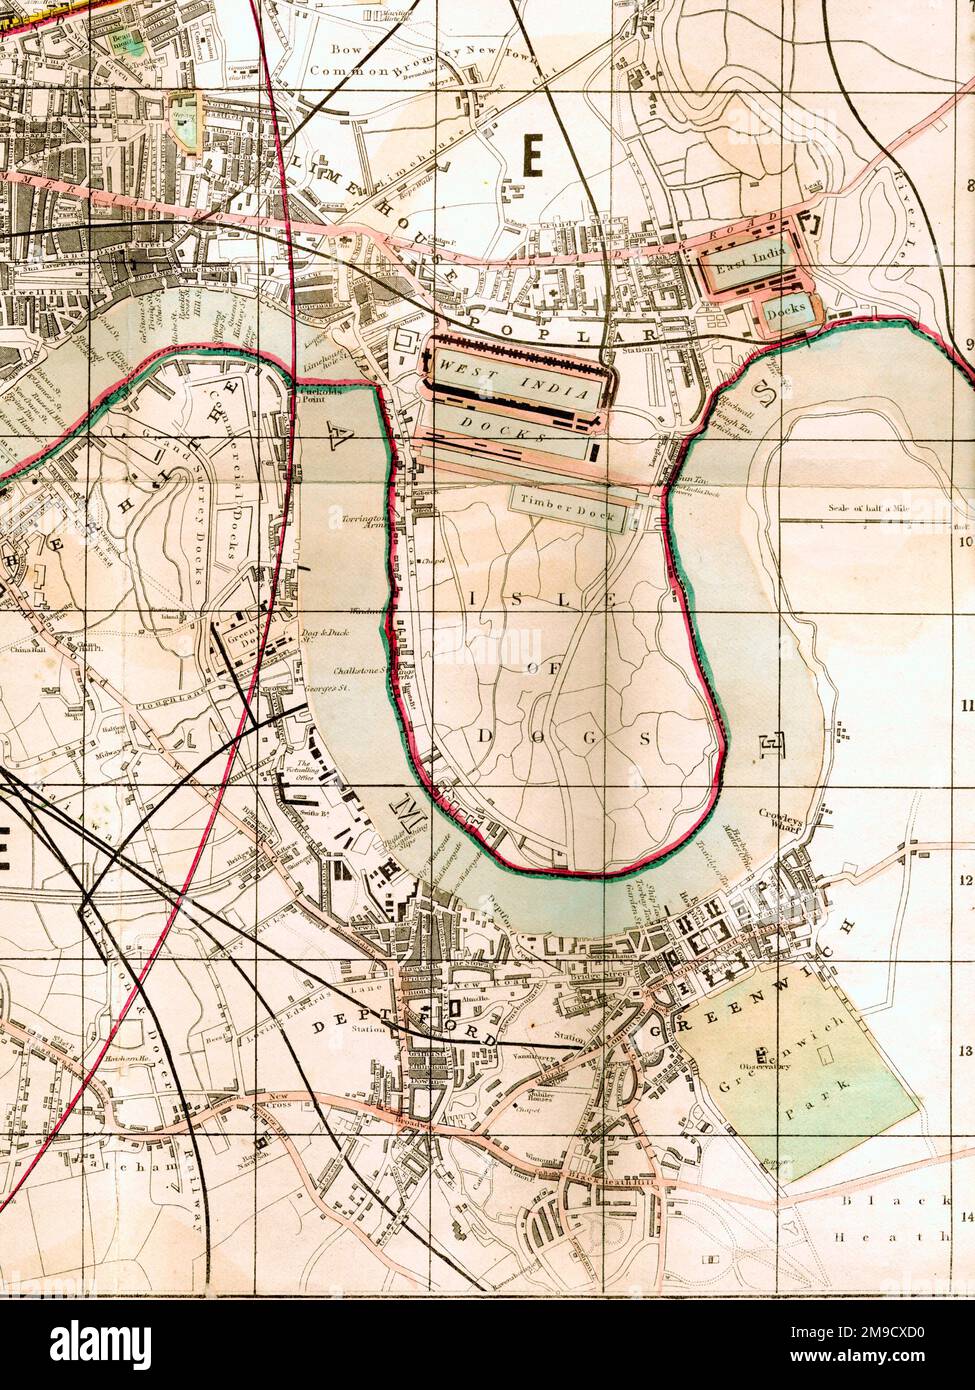 19th Century carte de l'île des chiens, Greenwich, Londres (extrait) montrant les docks de l'Inde de l'Ouest et de l'est, Limehouse, Poplar, Greenwich et Deptford. Banque D'Images